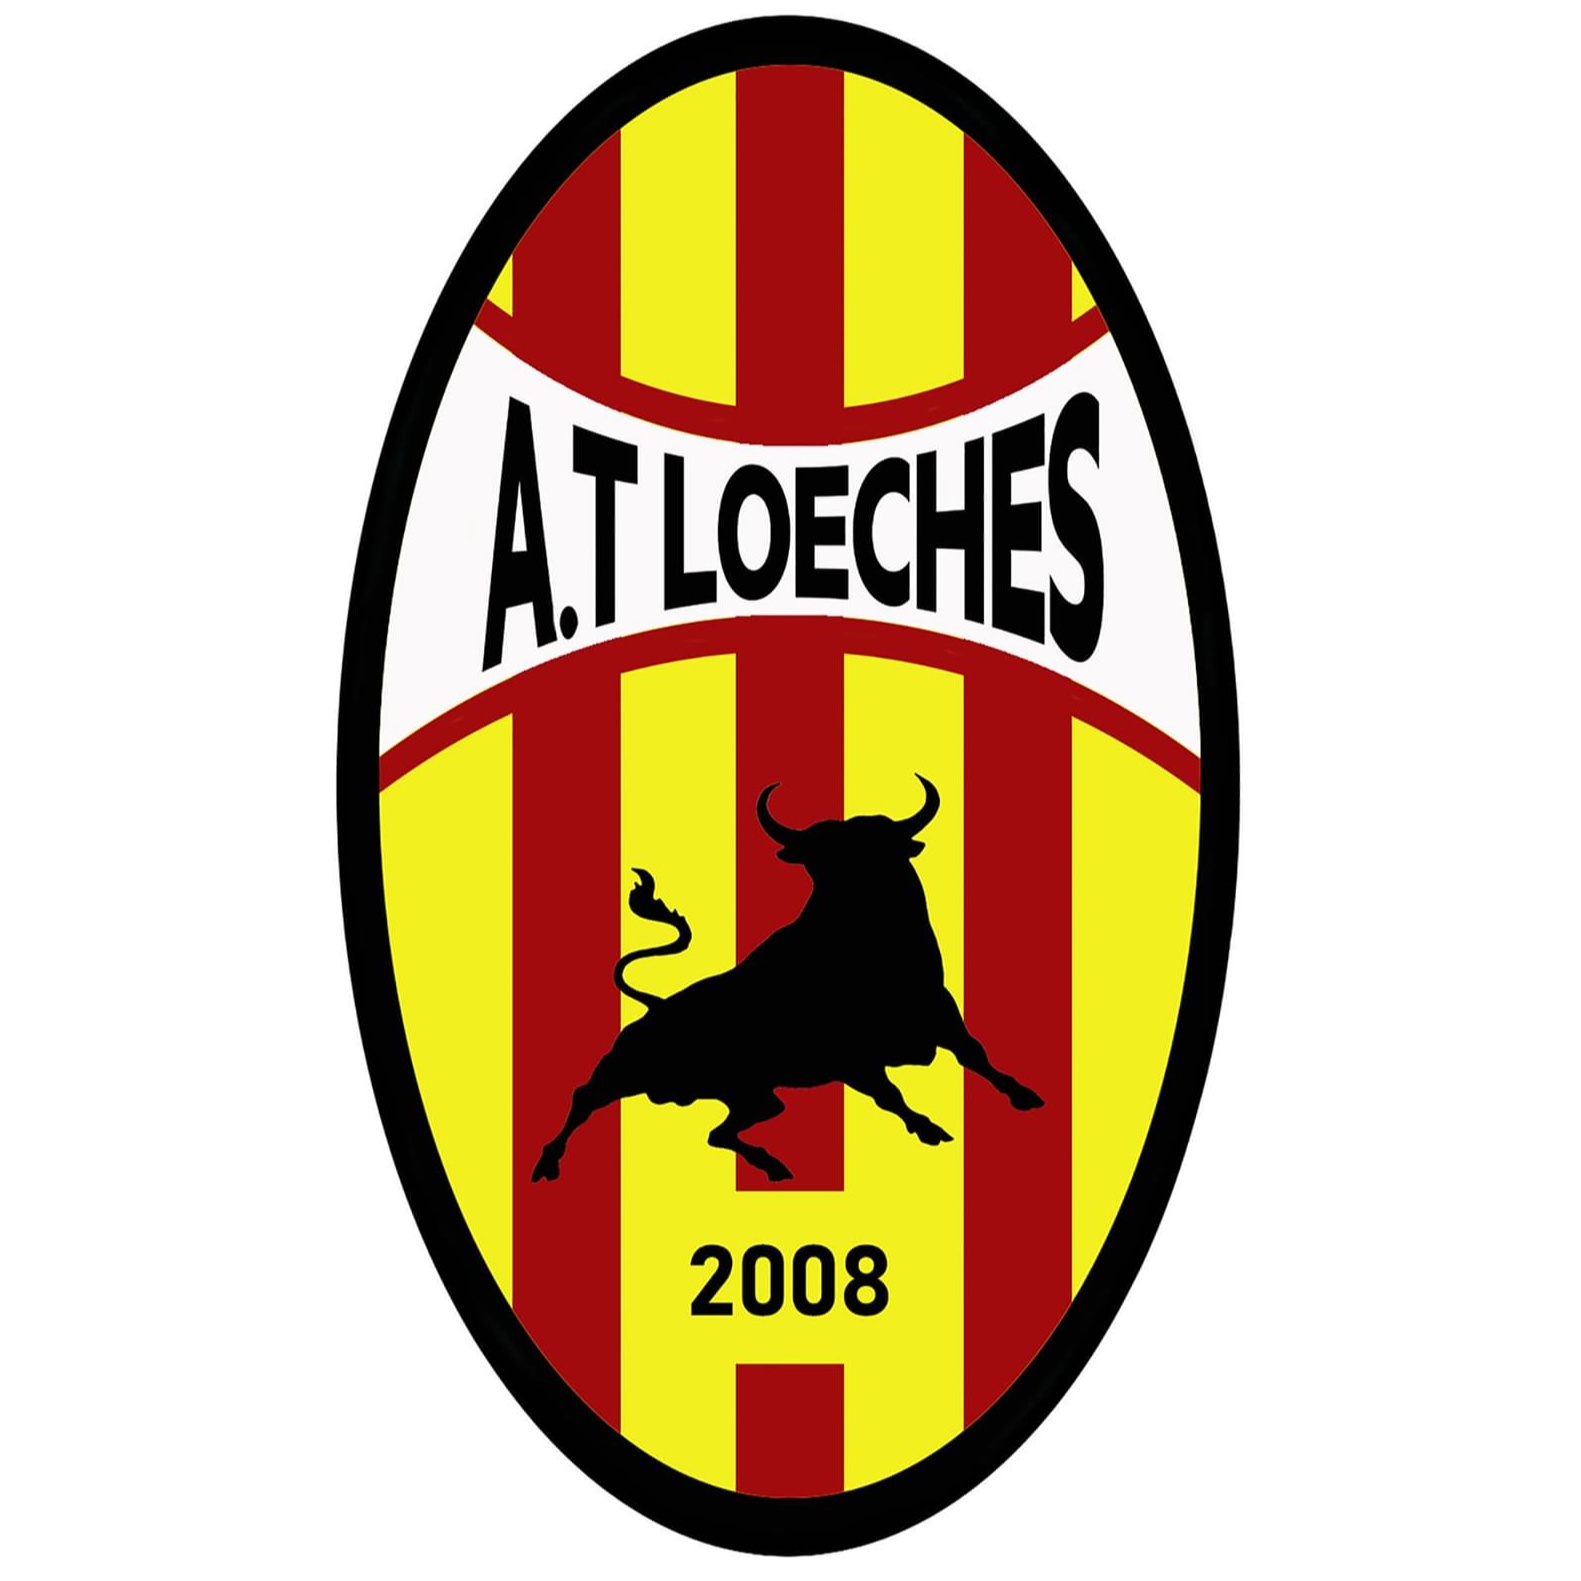 Escudo del Atlético Loeches B